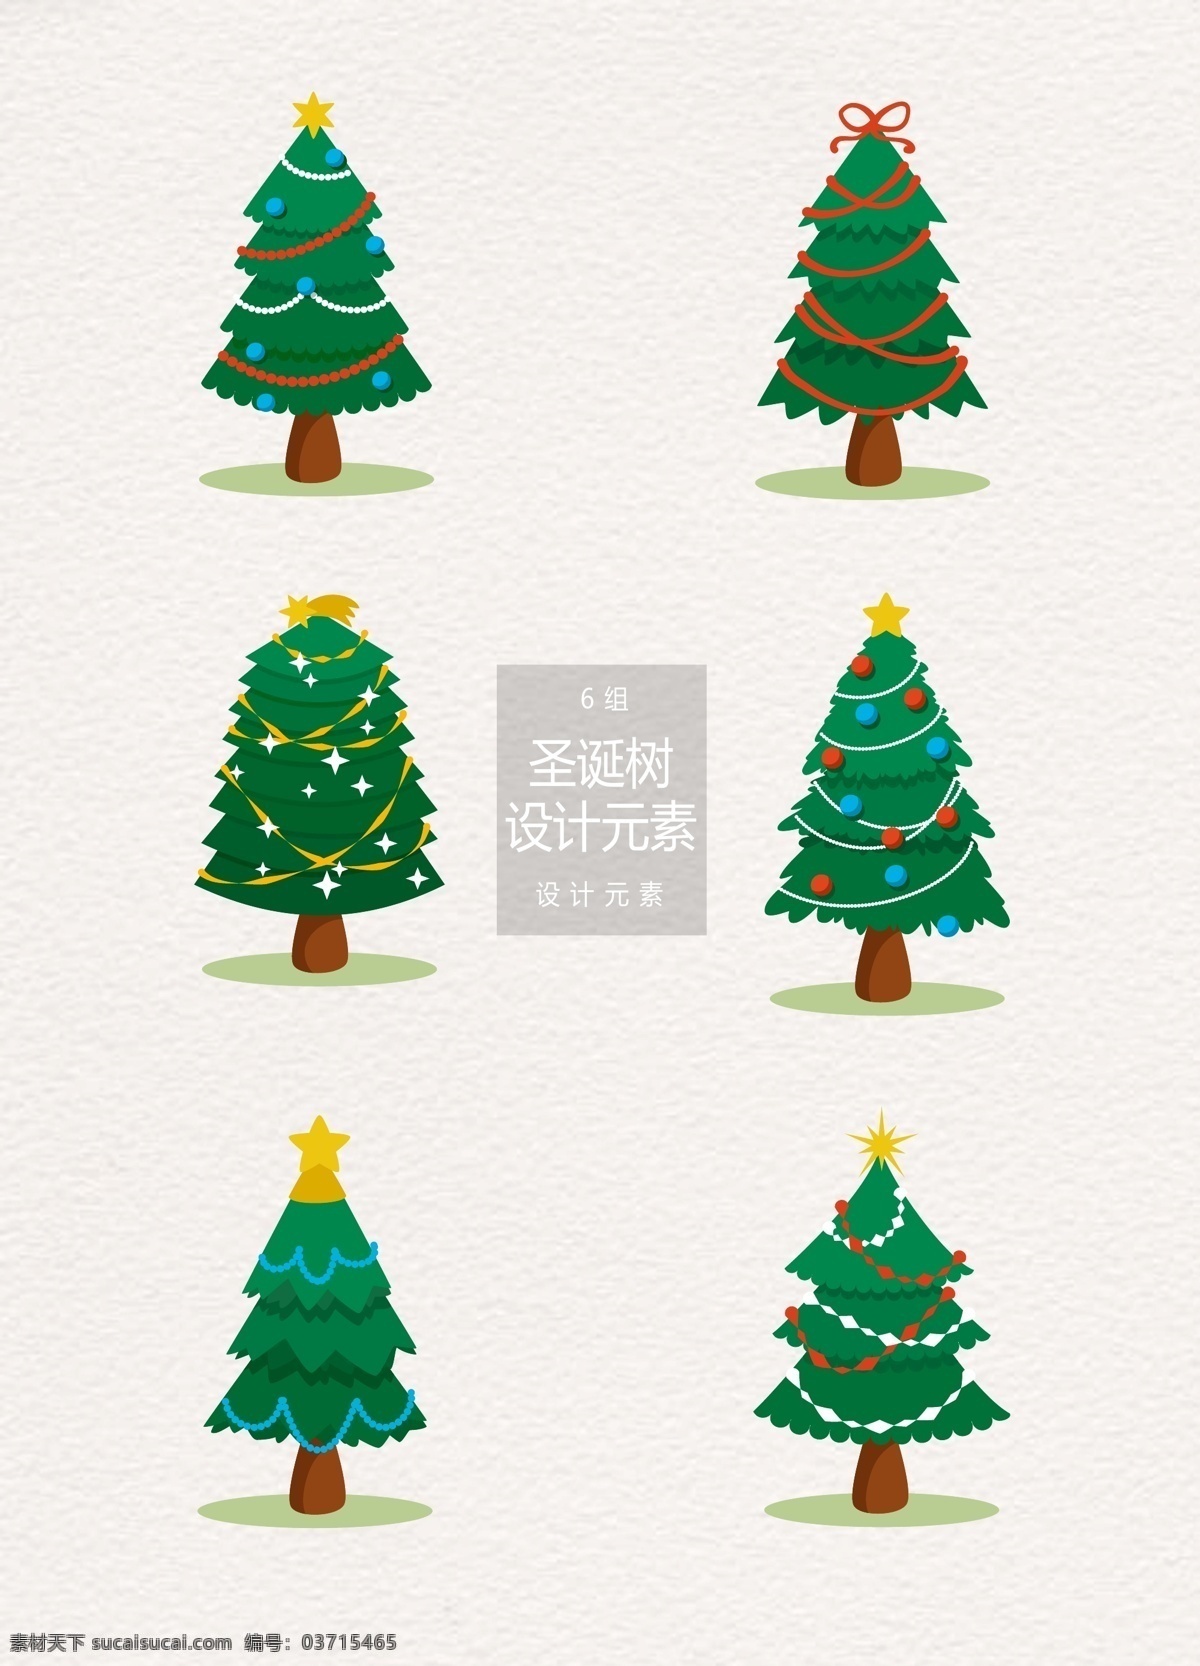 矢量 圣诞节 圣诞树 元素 设计元素 树木 矢量素材 圣诞 树